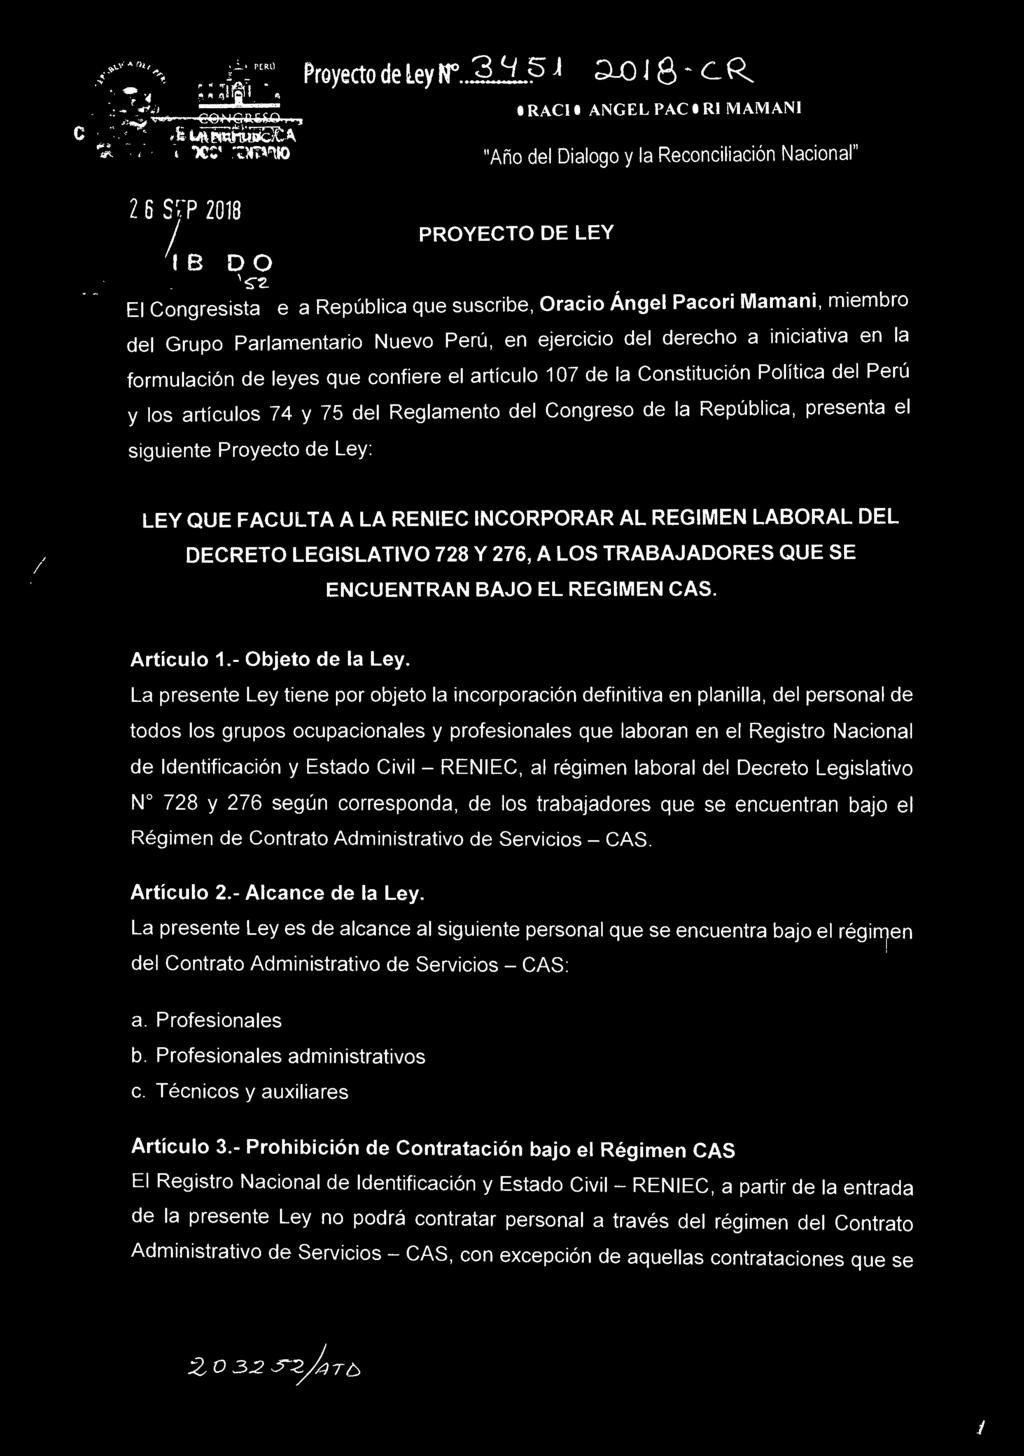 ejercicio del derecho a iniciativa en la formulación de leyes que confiere el artículo 107 de la Constitución Política del Perú y los artículos 74 y 75 del Reglamento del Congreso de la República,